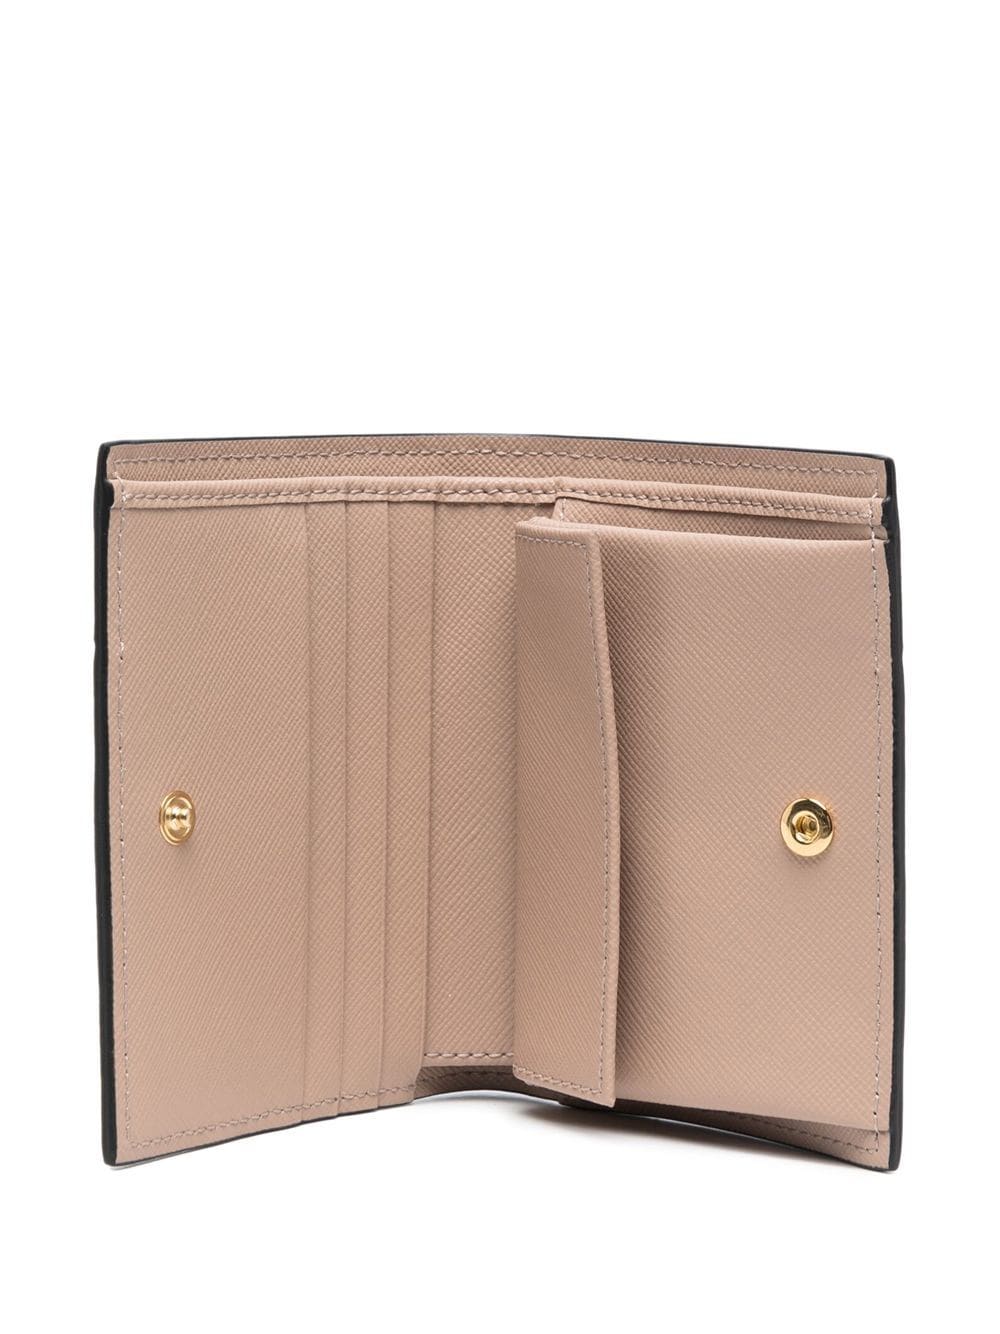 Colour-block leather wallet